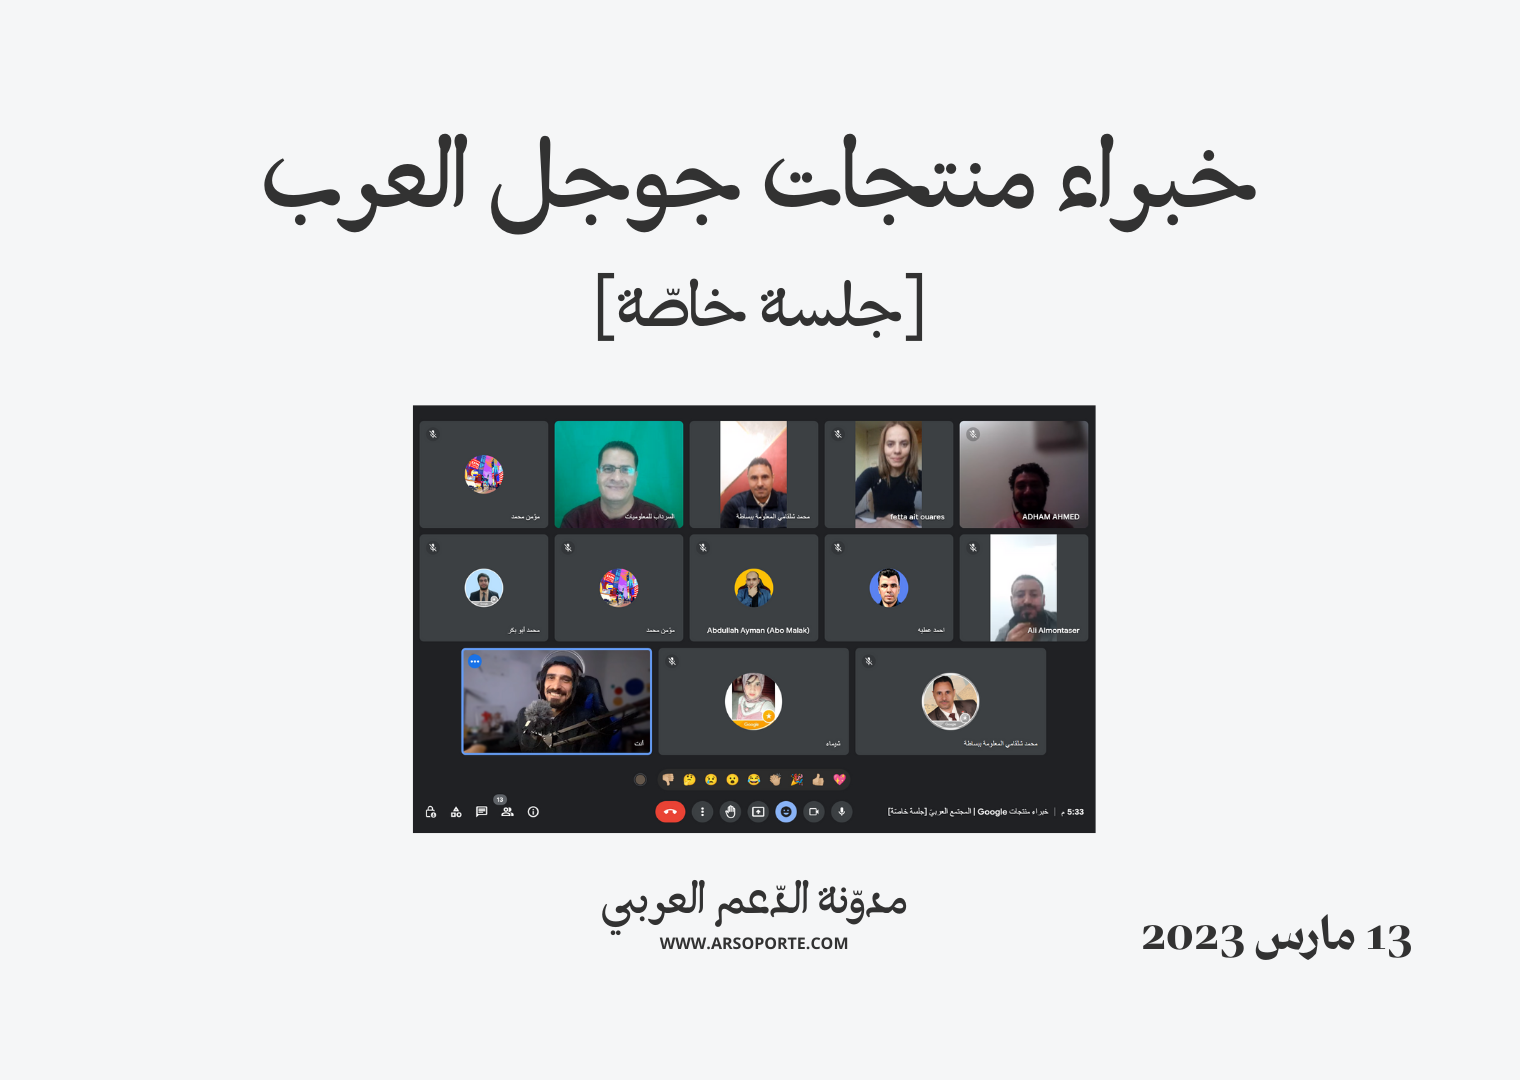 صورة تذكارية لخبراء منتجات جوجل العرب في جلسة شهرية خاصّة بتاريخ 13 مارس 2023